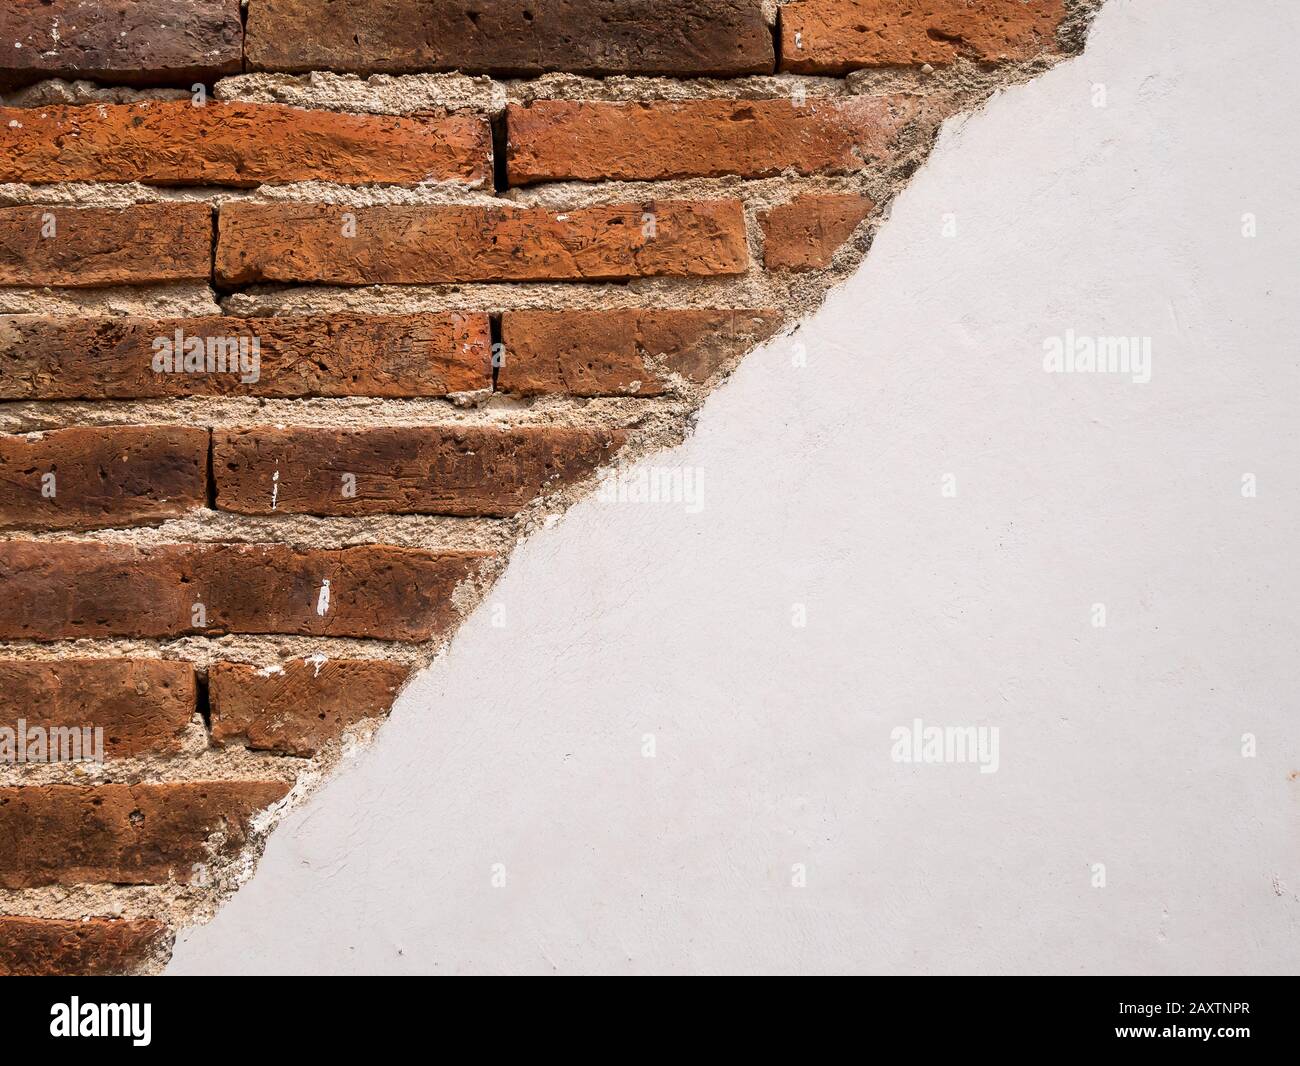 struttura di vecchio muro di mattoni di cemento fessurato bianco. superficie in pietra bianca d'epoca. retro grunge muro di mattoni rossi con stucchi bianchi danneggiati Foto Stock